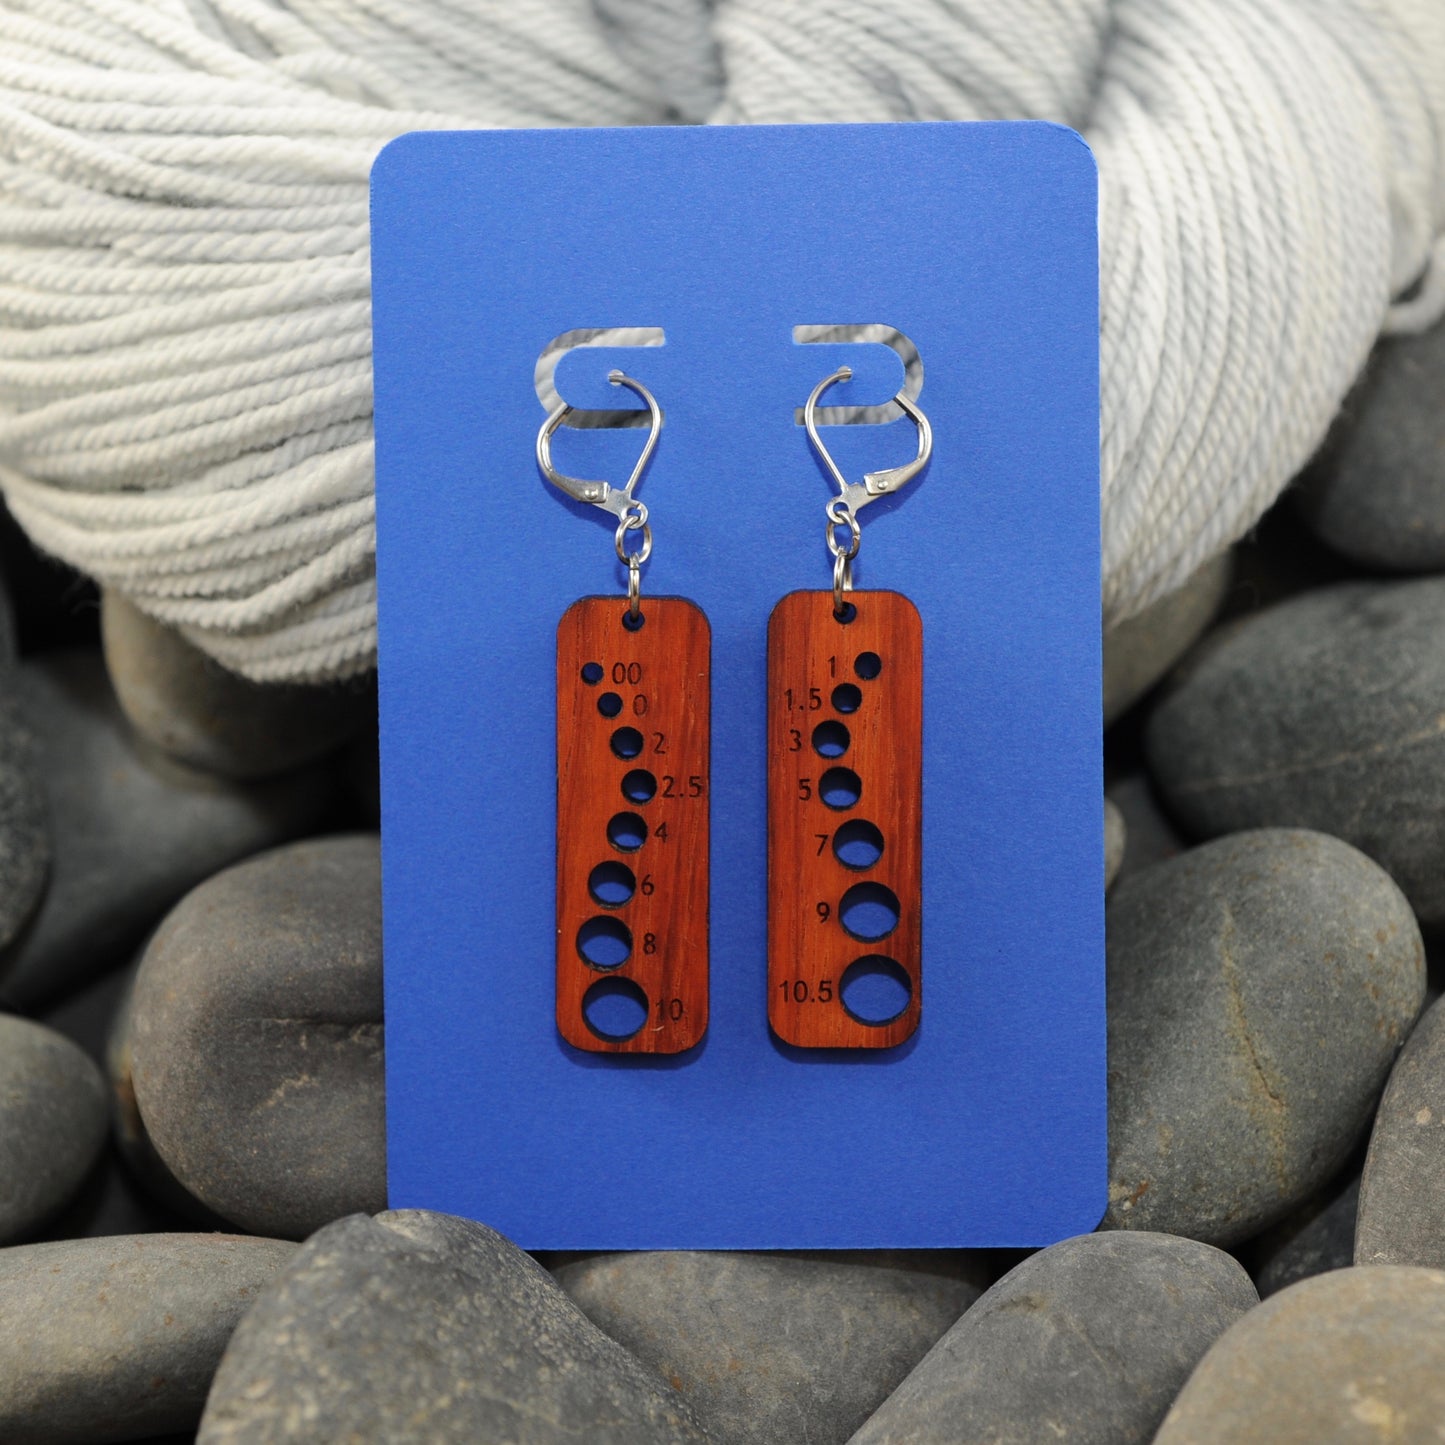 Knitting Needle Gauge Earrings - Assorted Acrylic and Hardwood